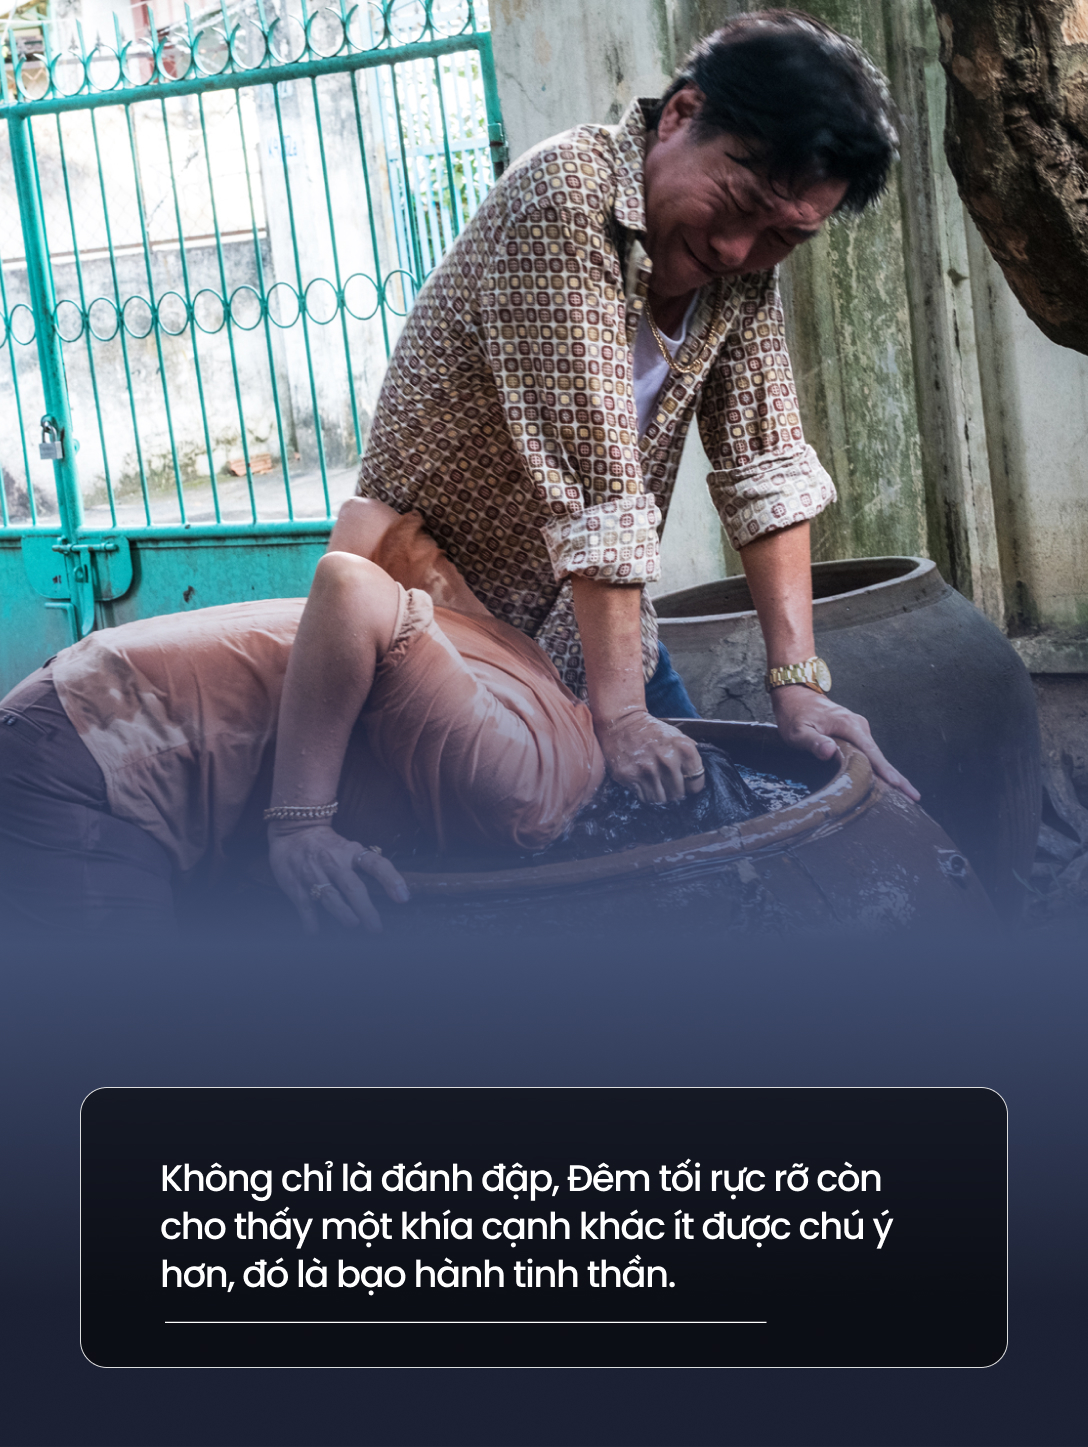 Review Đêm tối rực rỡ: Nhìn vào gia đình vô phúc nhất Việt Nam để thấy vấn nạn bạo hành nhức nhối đến thế nào - Ảnh 5.